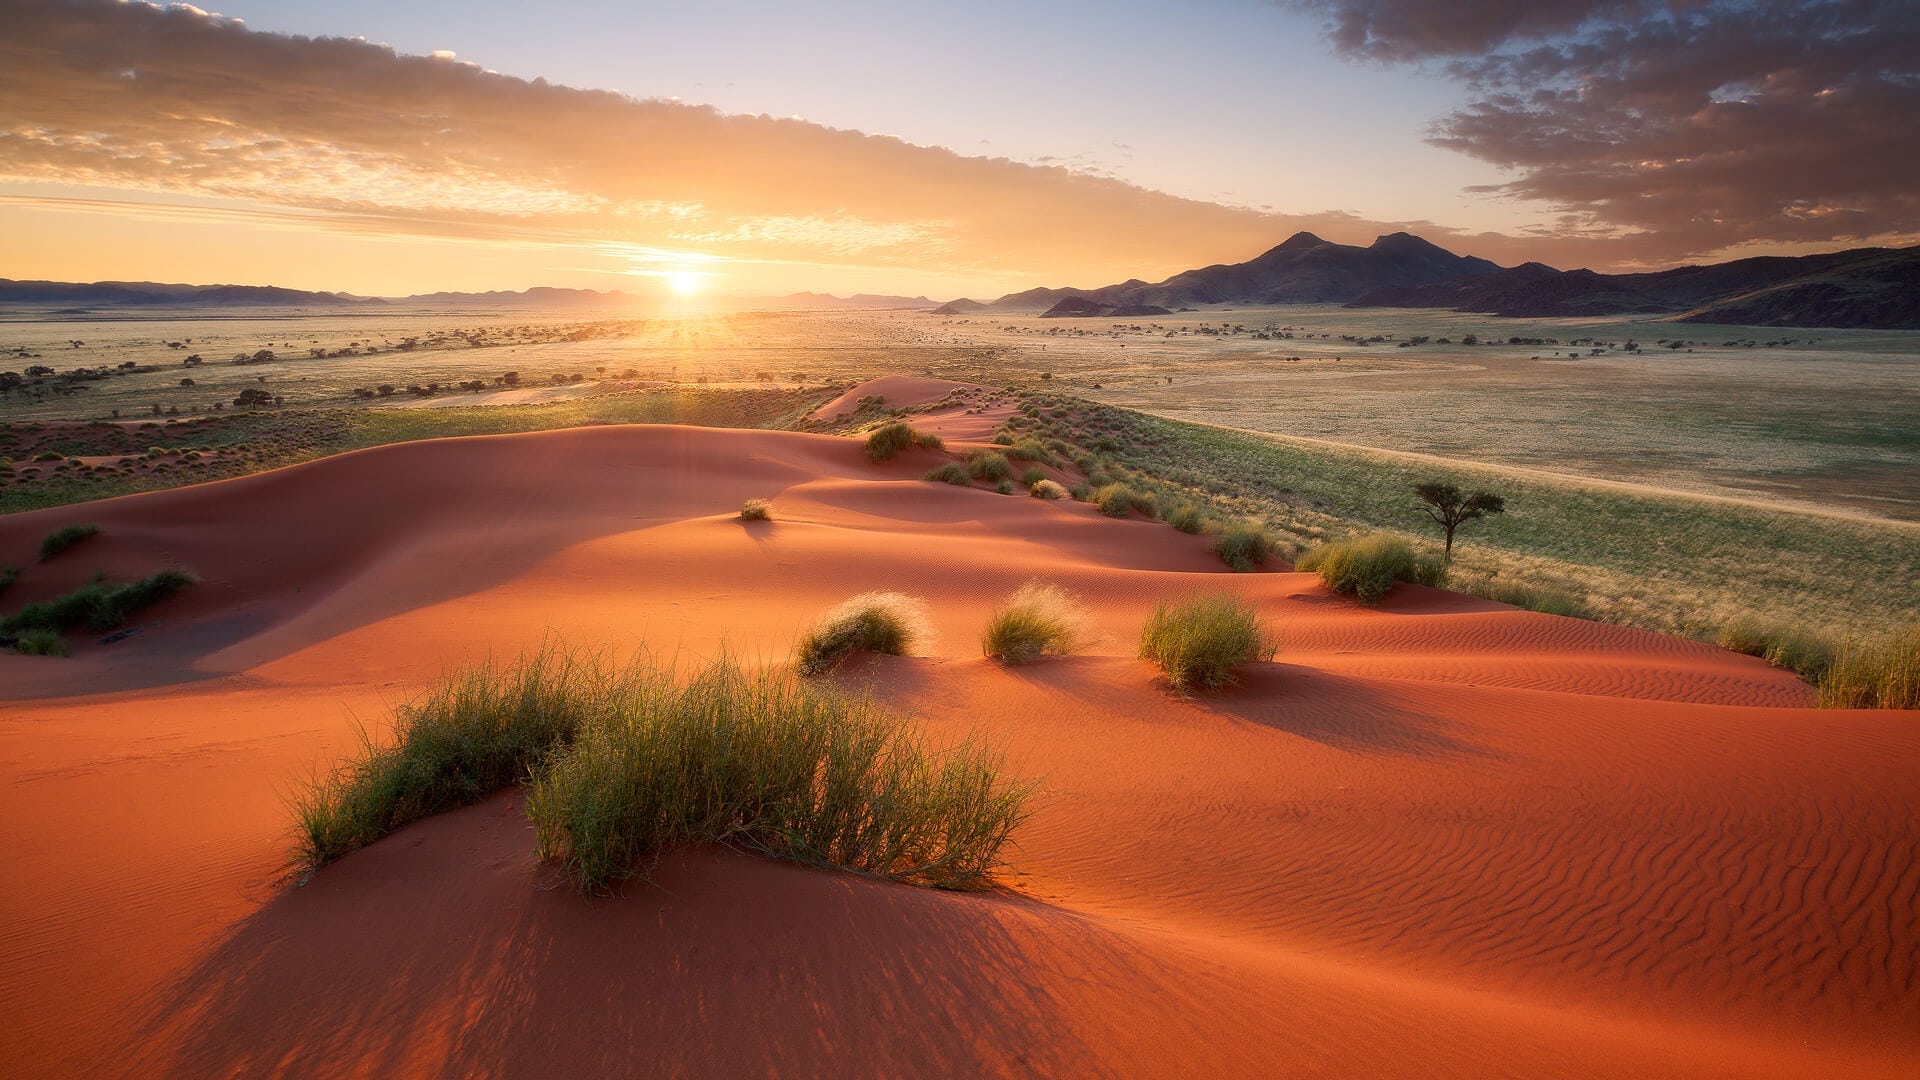 Namib Desert Tour Travel Republic Africa | Hot Sex Picture